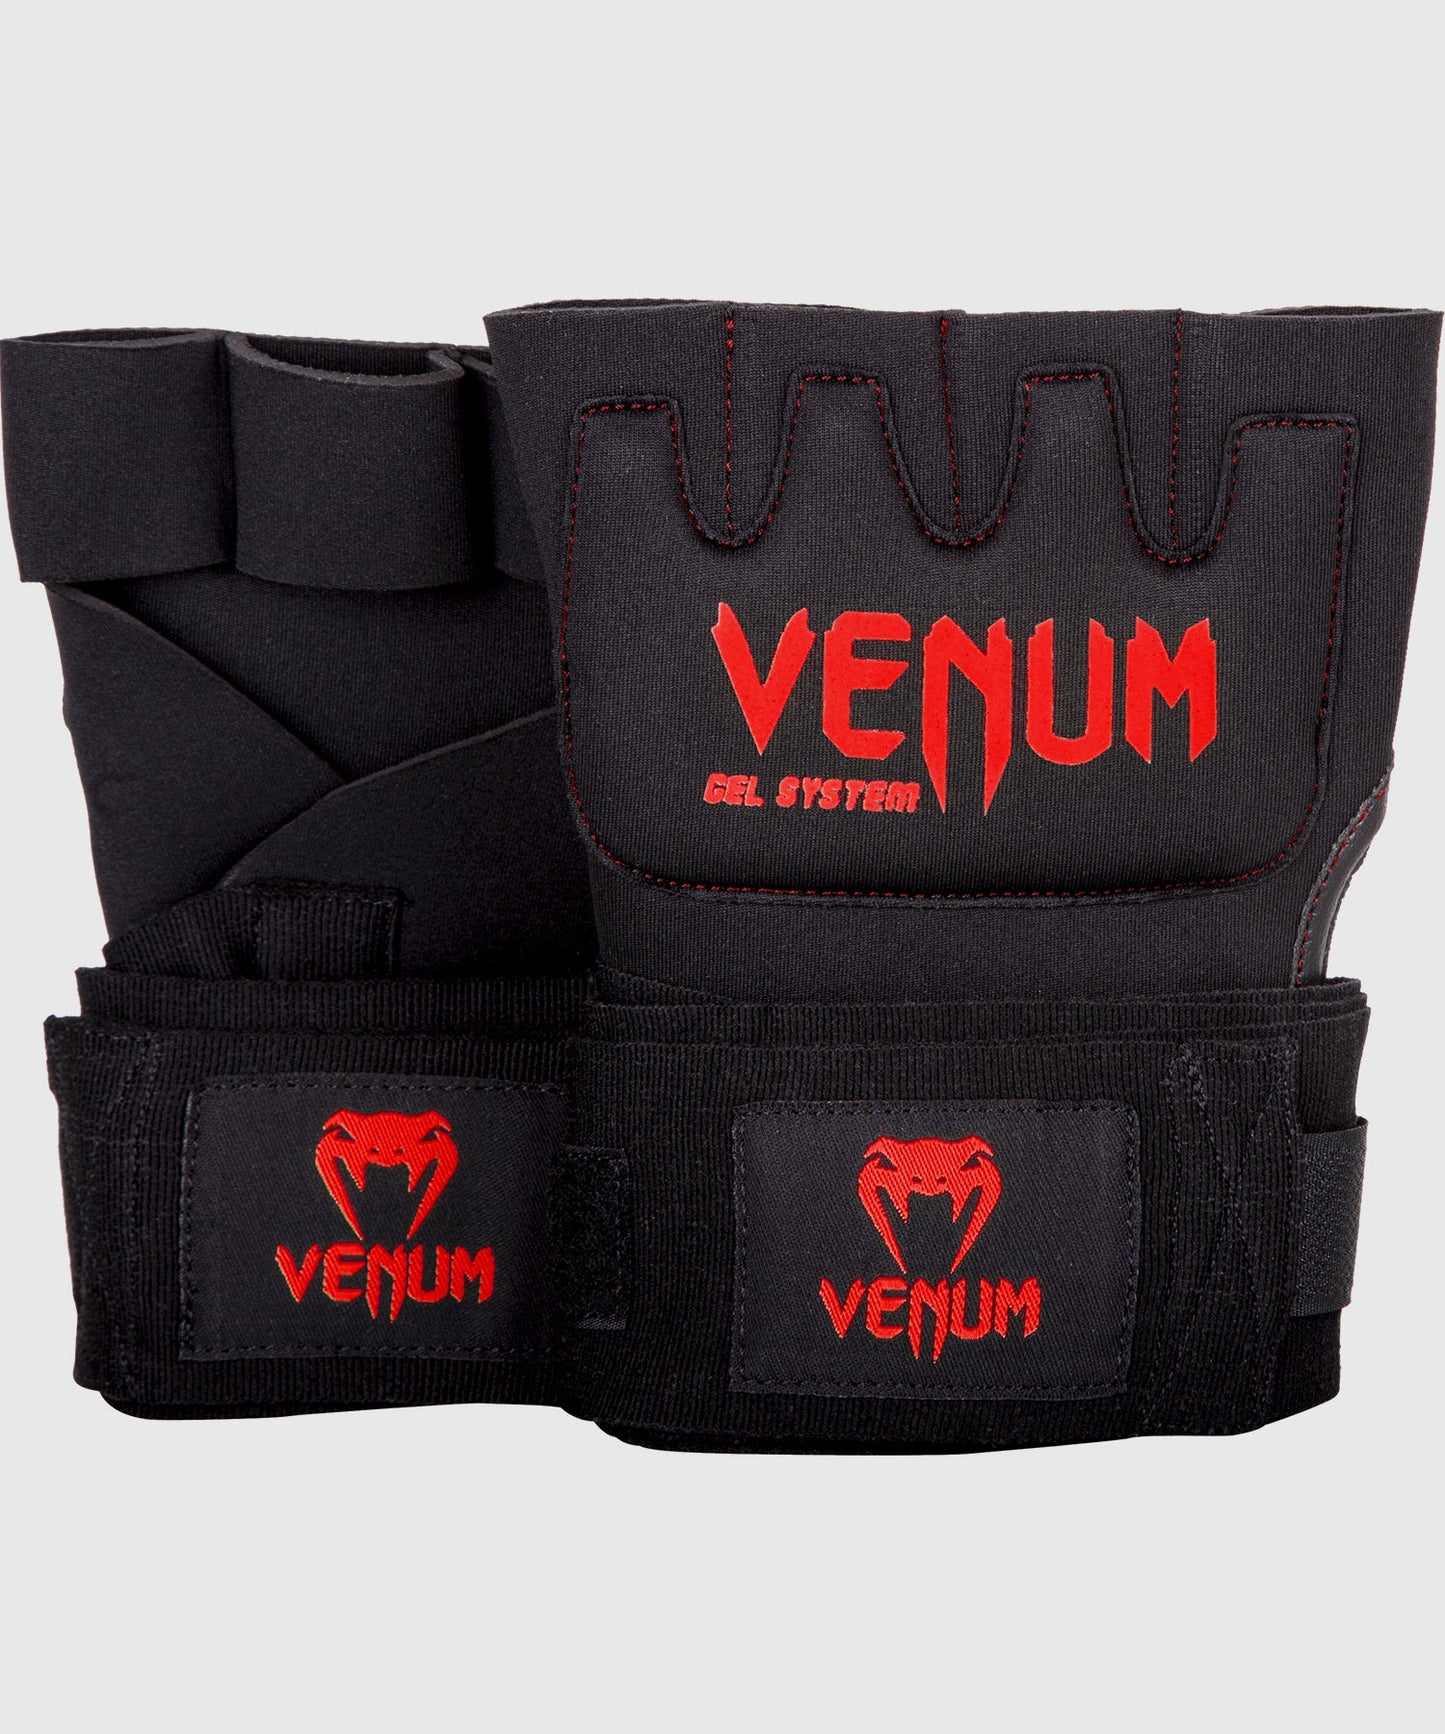 Venum Gel Kontact Handschuh Wraps - Schwarz/Rot